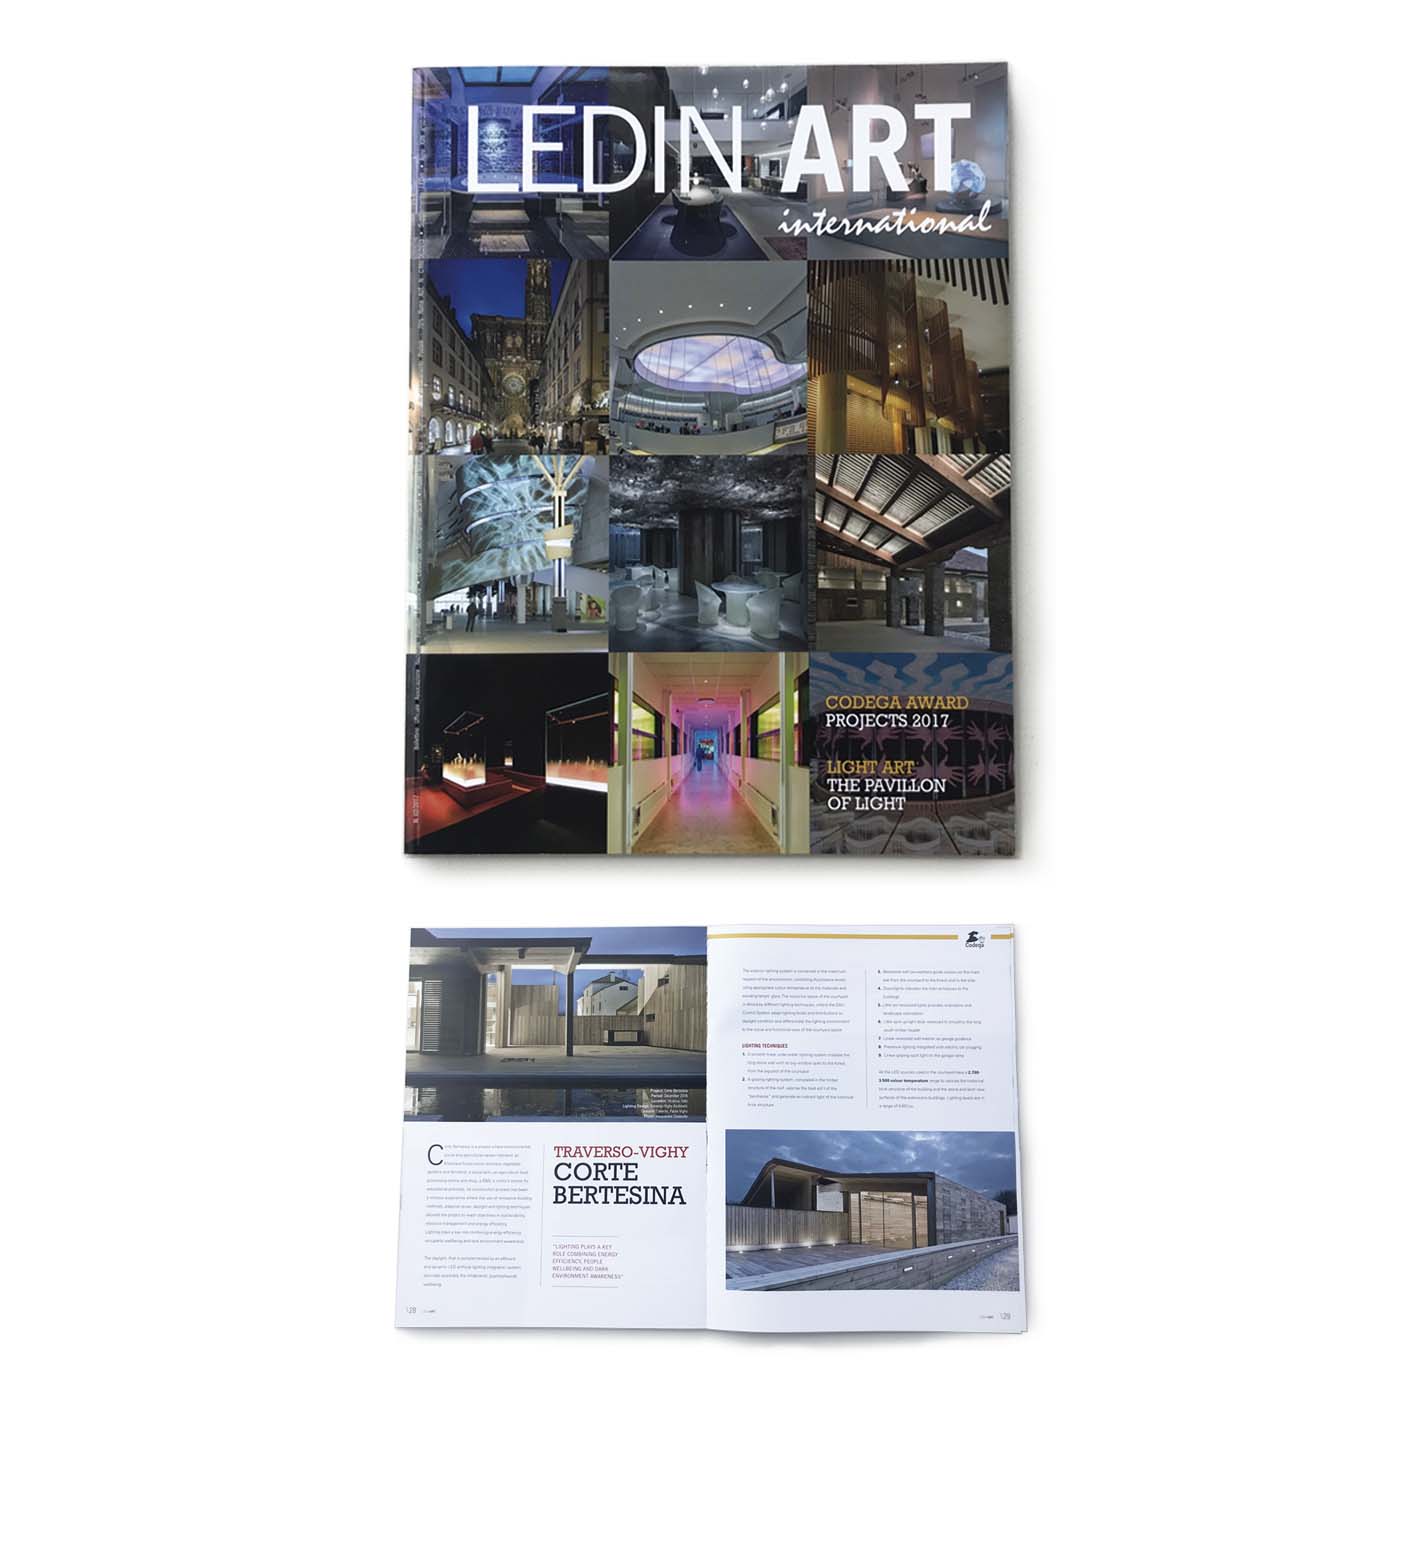 articolo-rivista-pubblicazione-press-led-art-luce-traverso-vighy-architetti-vicenza-corte-rurale-bertesina